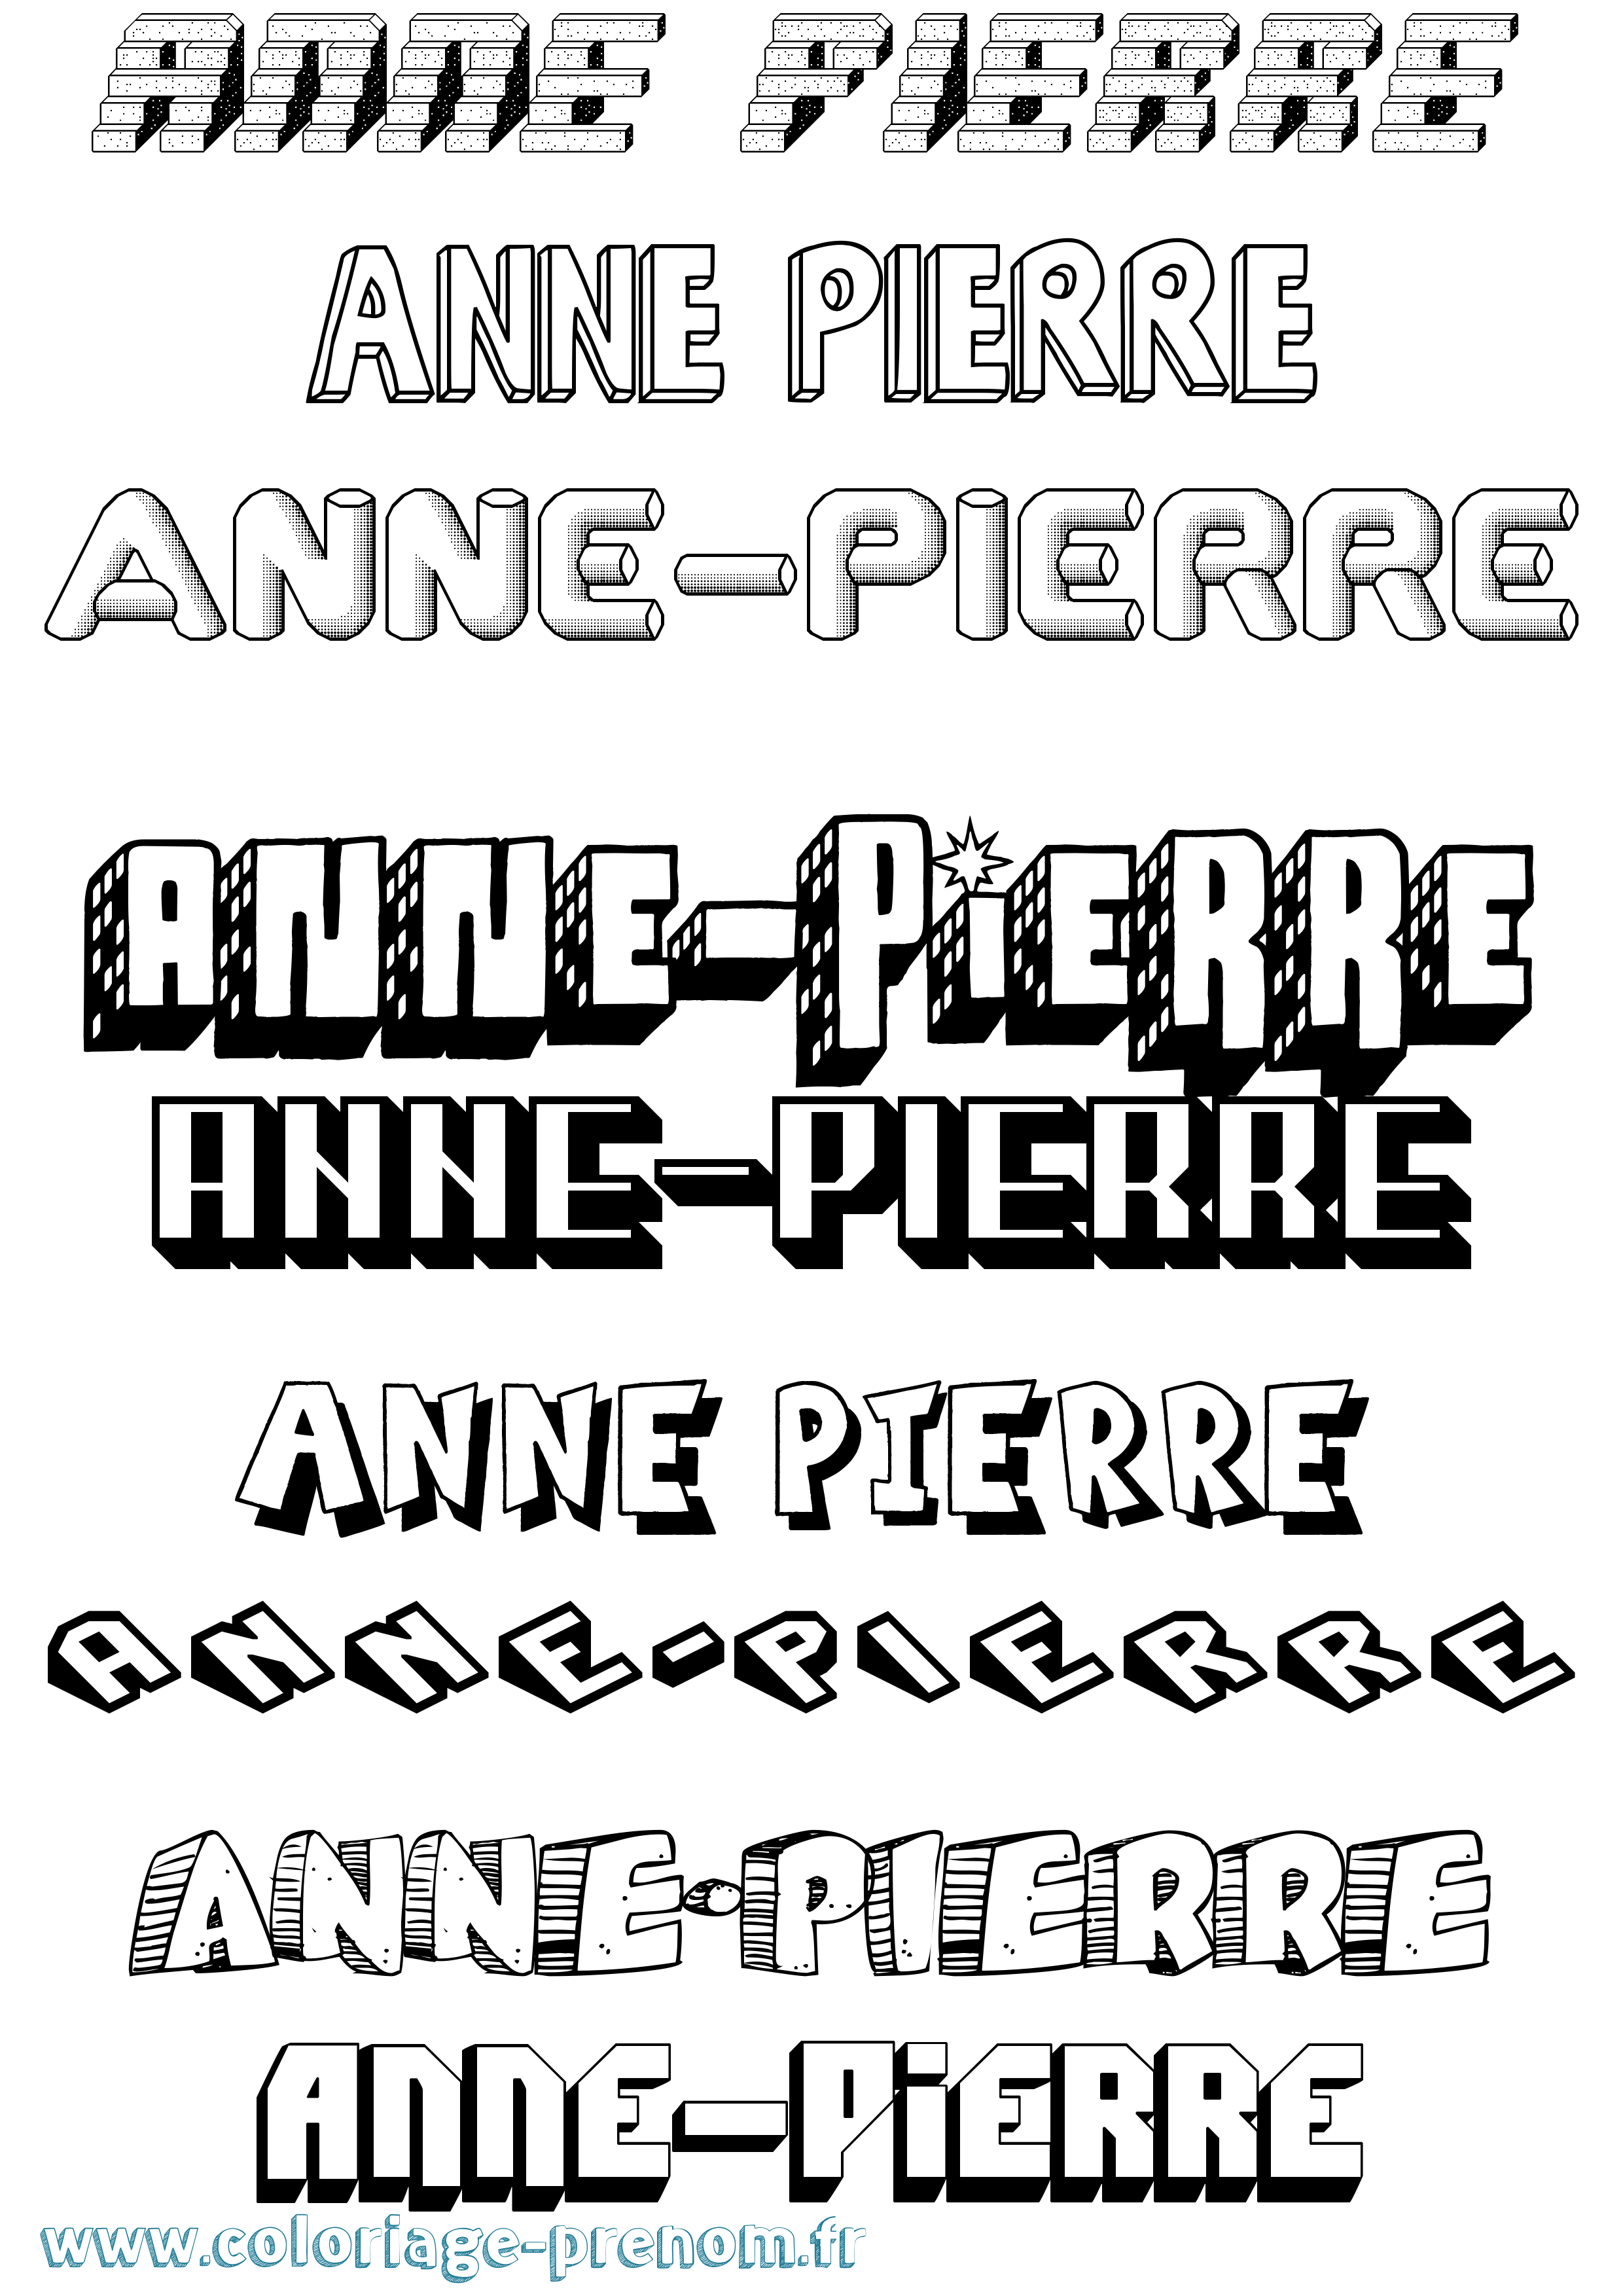 Coloriage prénom Anne-Pierre Effet 3D